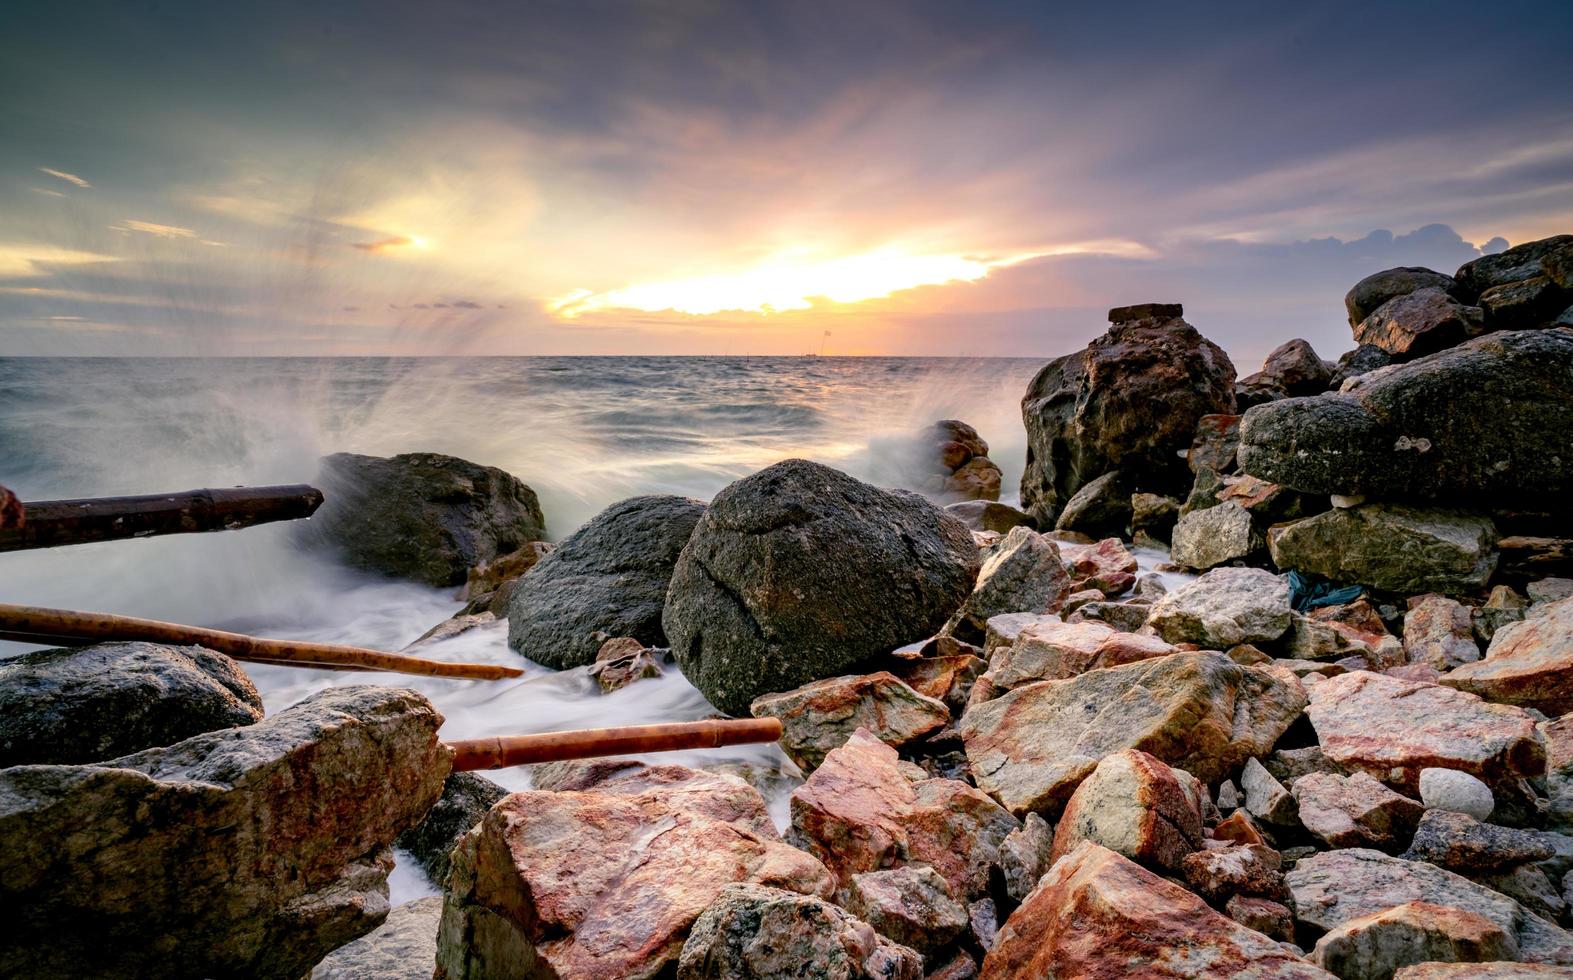 havsvattenstänk på stenstrand med vacker solnedgångshimmel och moln. havsvåg som plaskar på sten vid havet på sommaren. naturlandskap. tropisk paradisstrand vid solnedgången. stenstrand vid kusten. foto